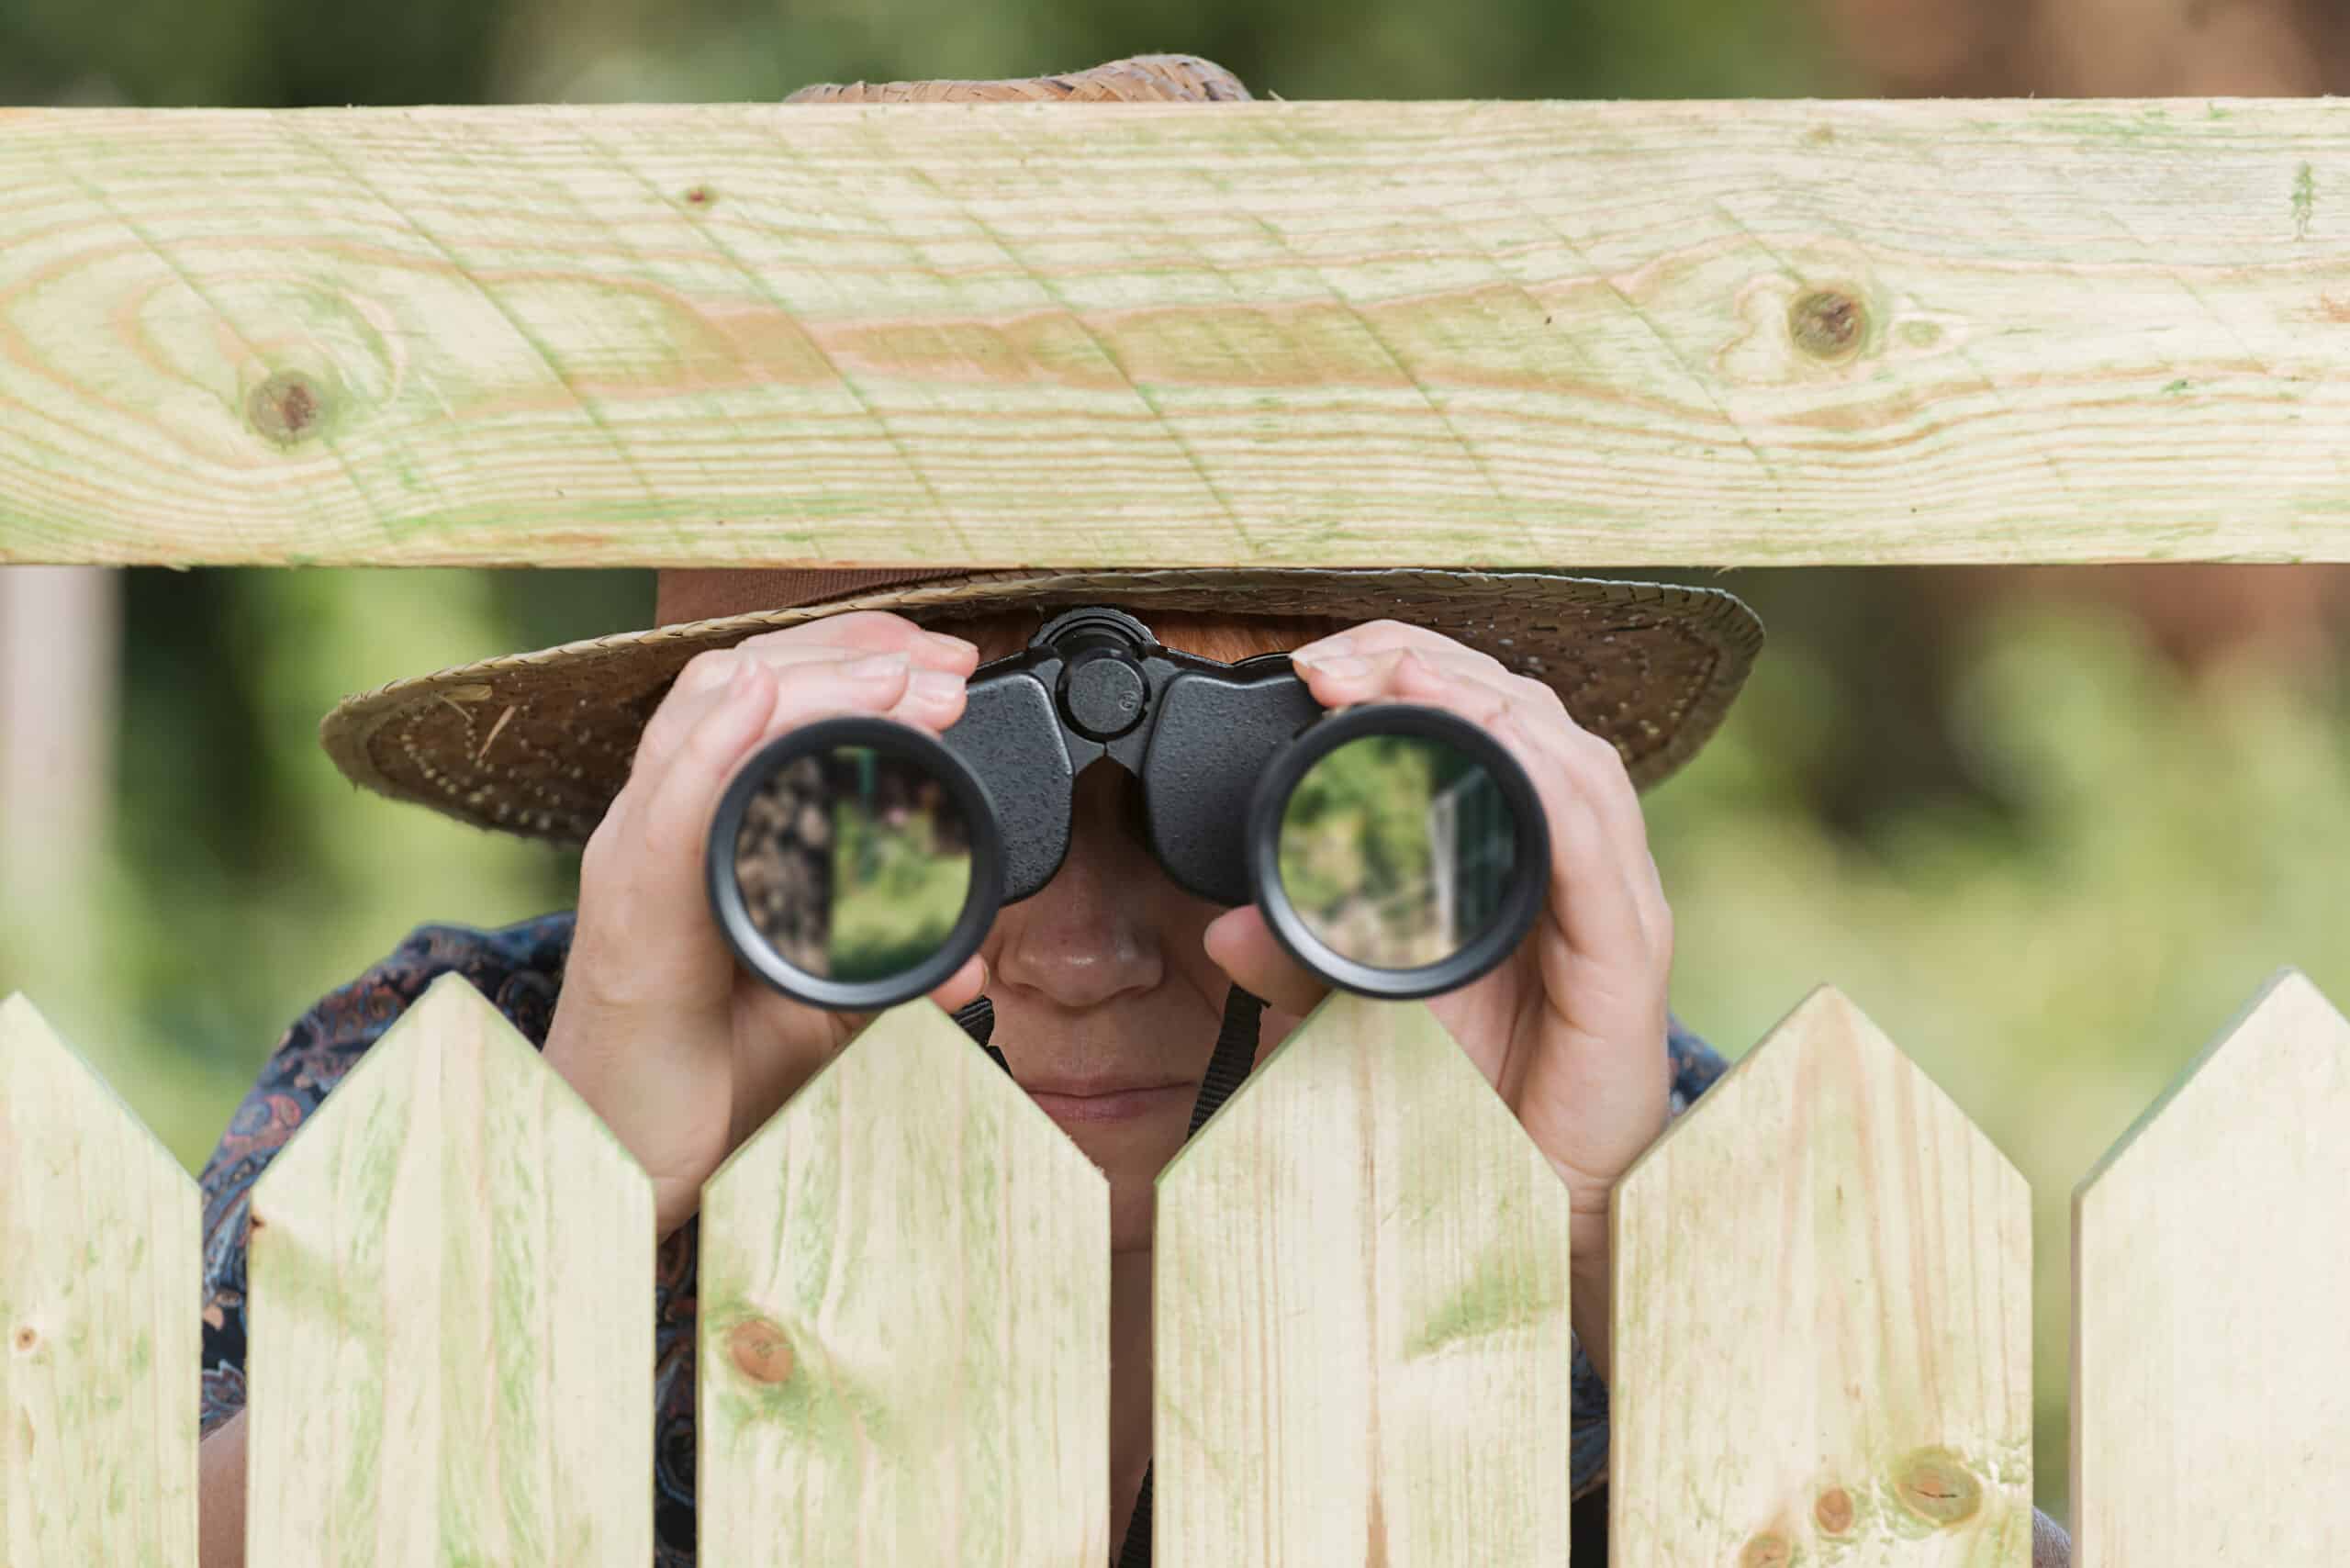 inopla Datenschutz: Person schaut mit Fernglas über den Gartenzaun